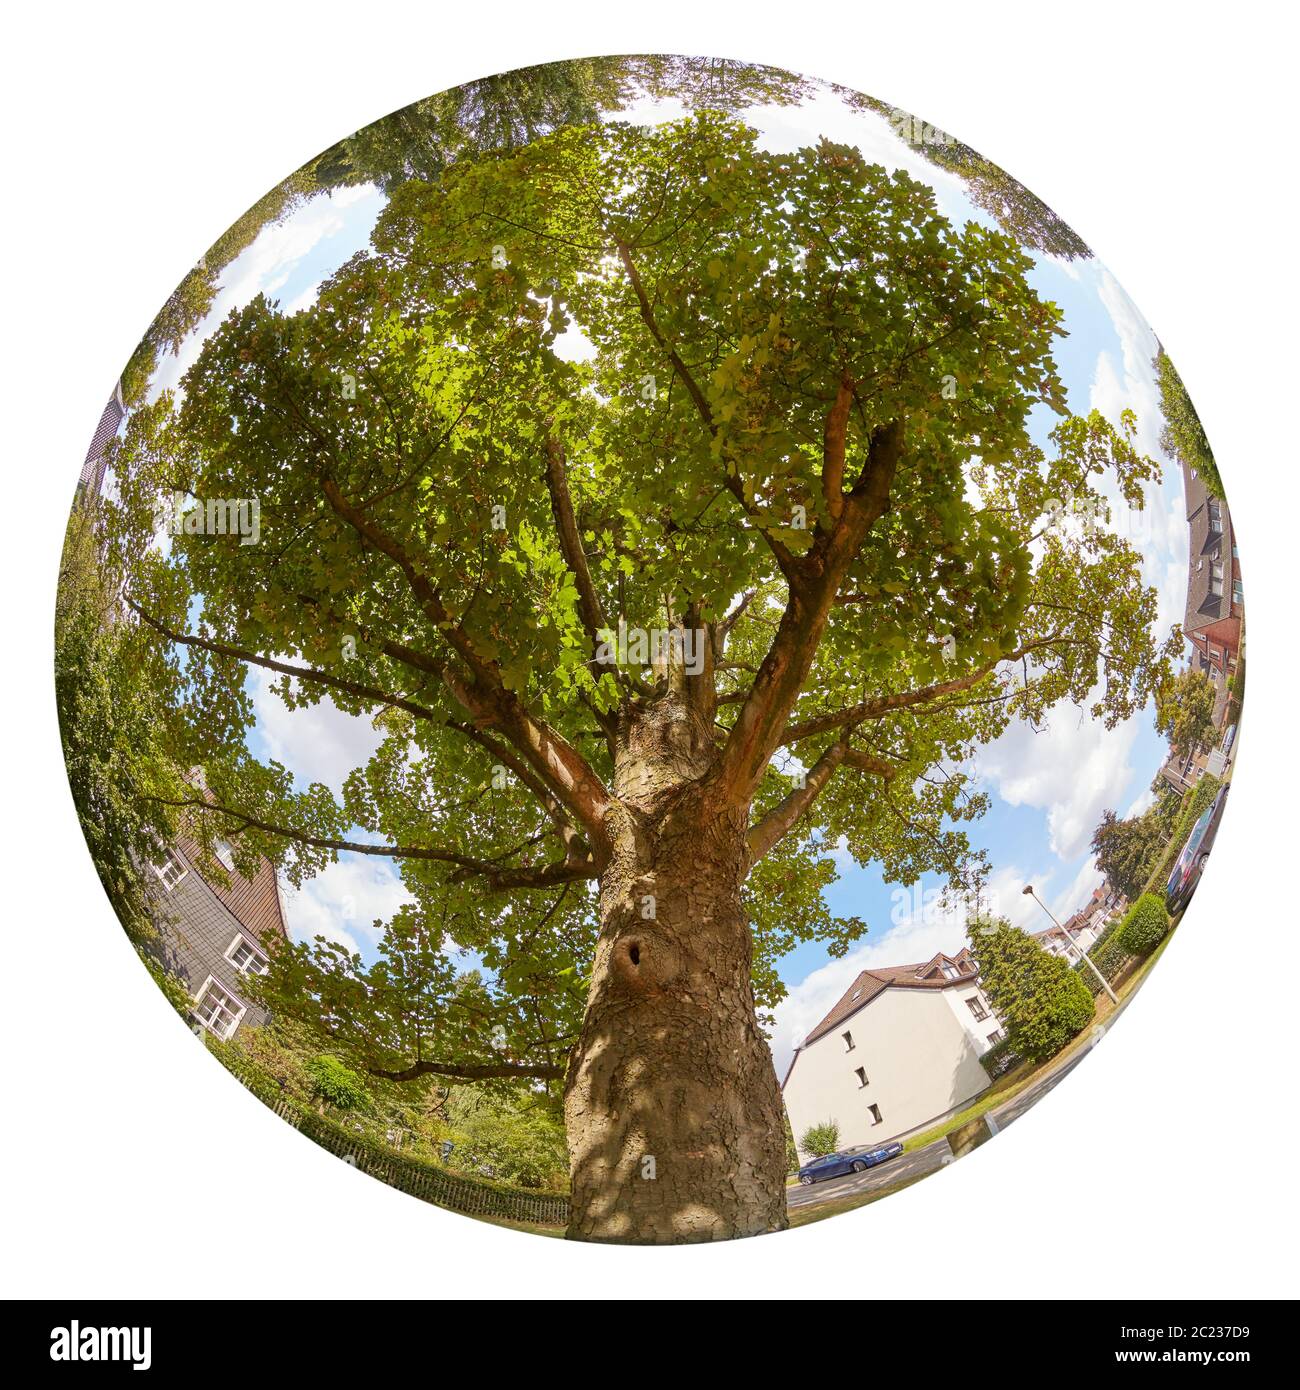 Sycamore tree Stock Photo